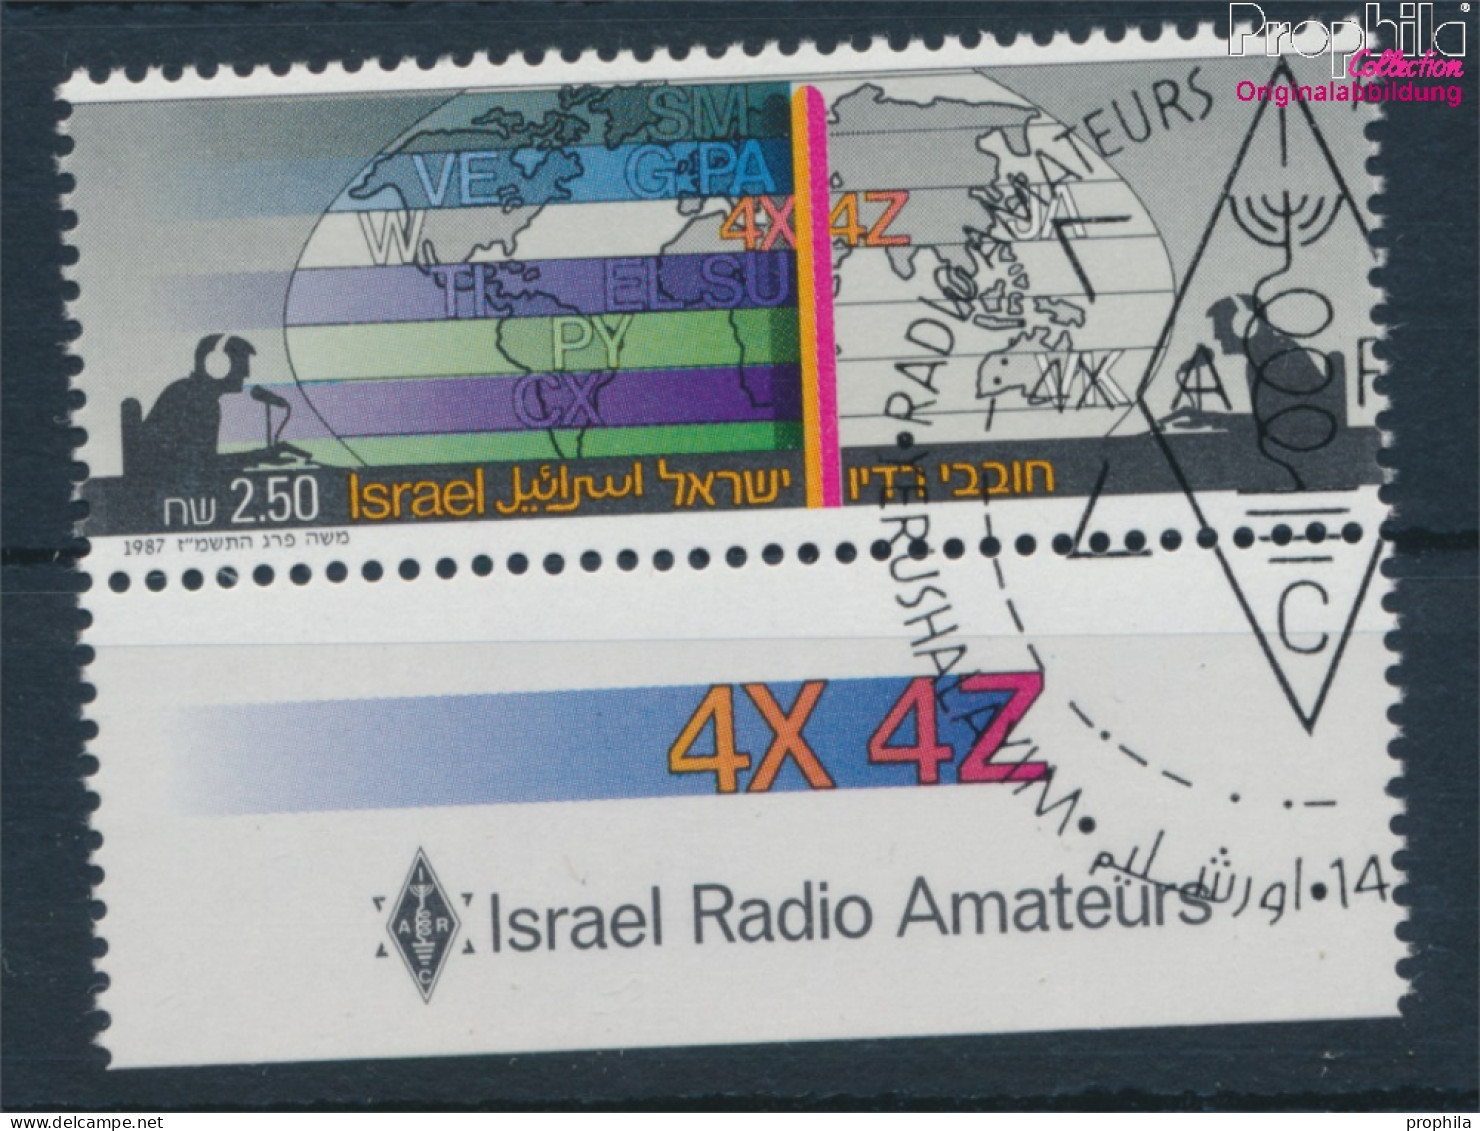 Israel 1063 Mit Tab (kompl.Ausg.) Gestempelt 1987 Radioamateure (10252052 - Gebruikt (met Tabs)